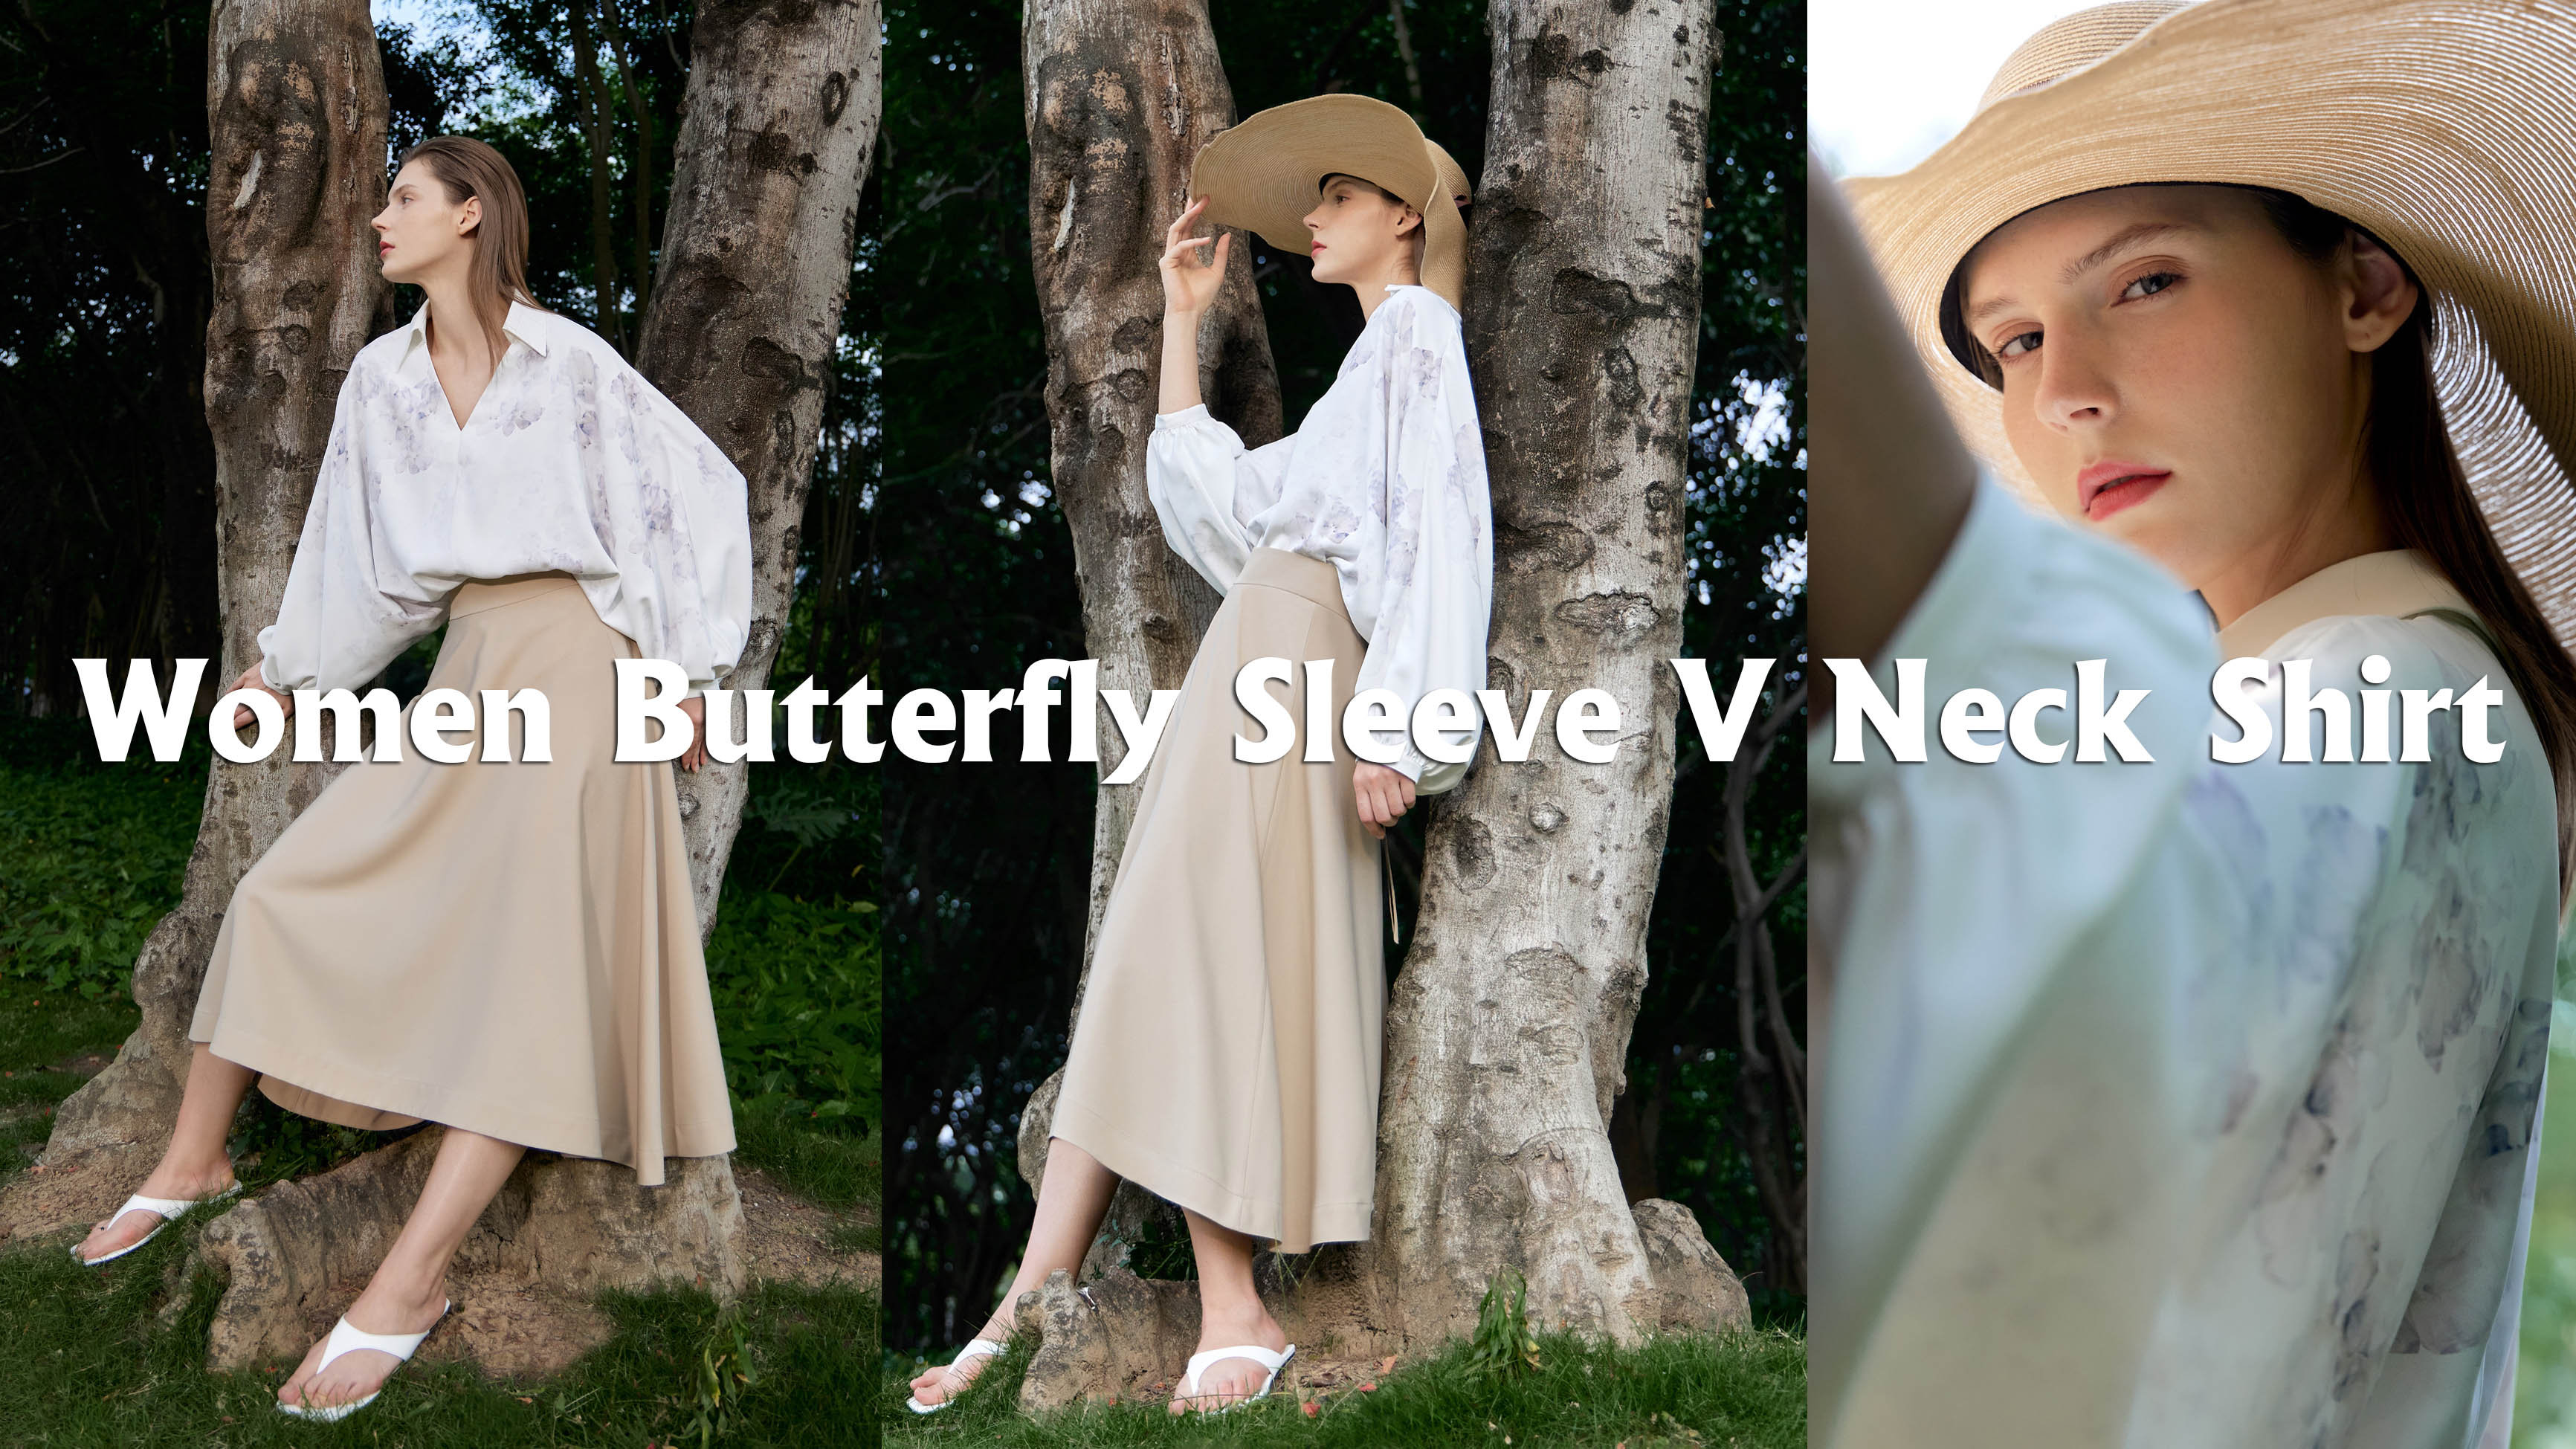 Dámská košile Butterfly Sleeve V Neck Shirt Products |Auschalink